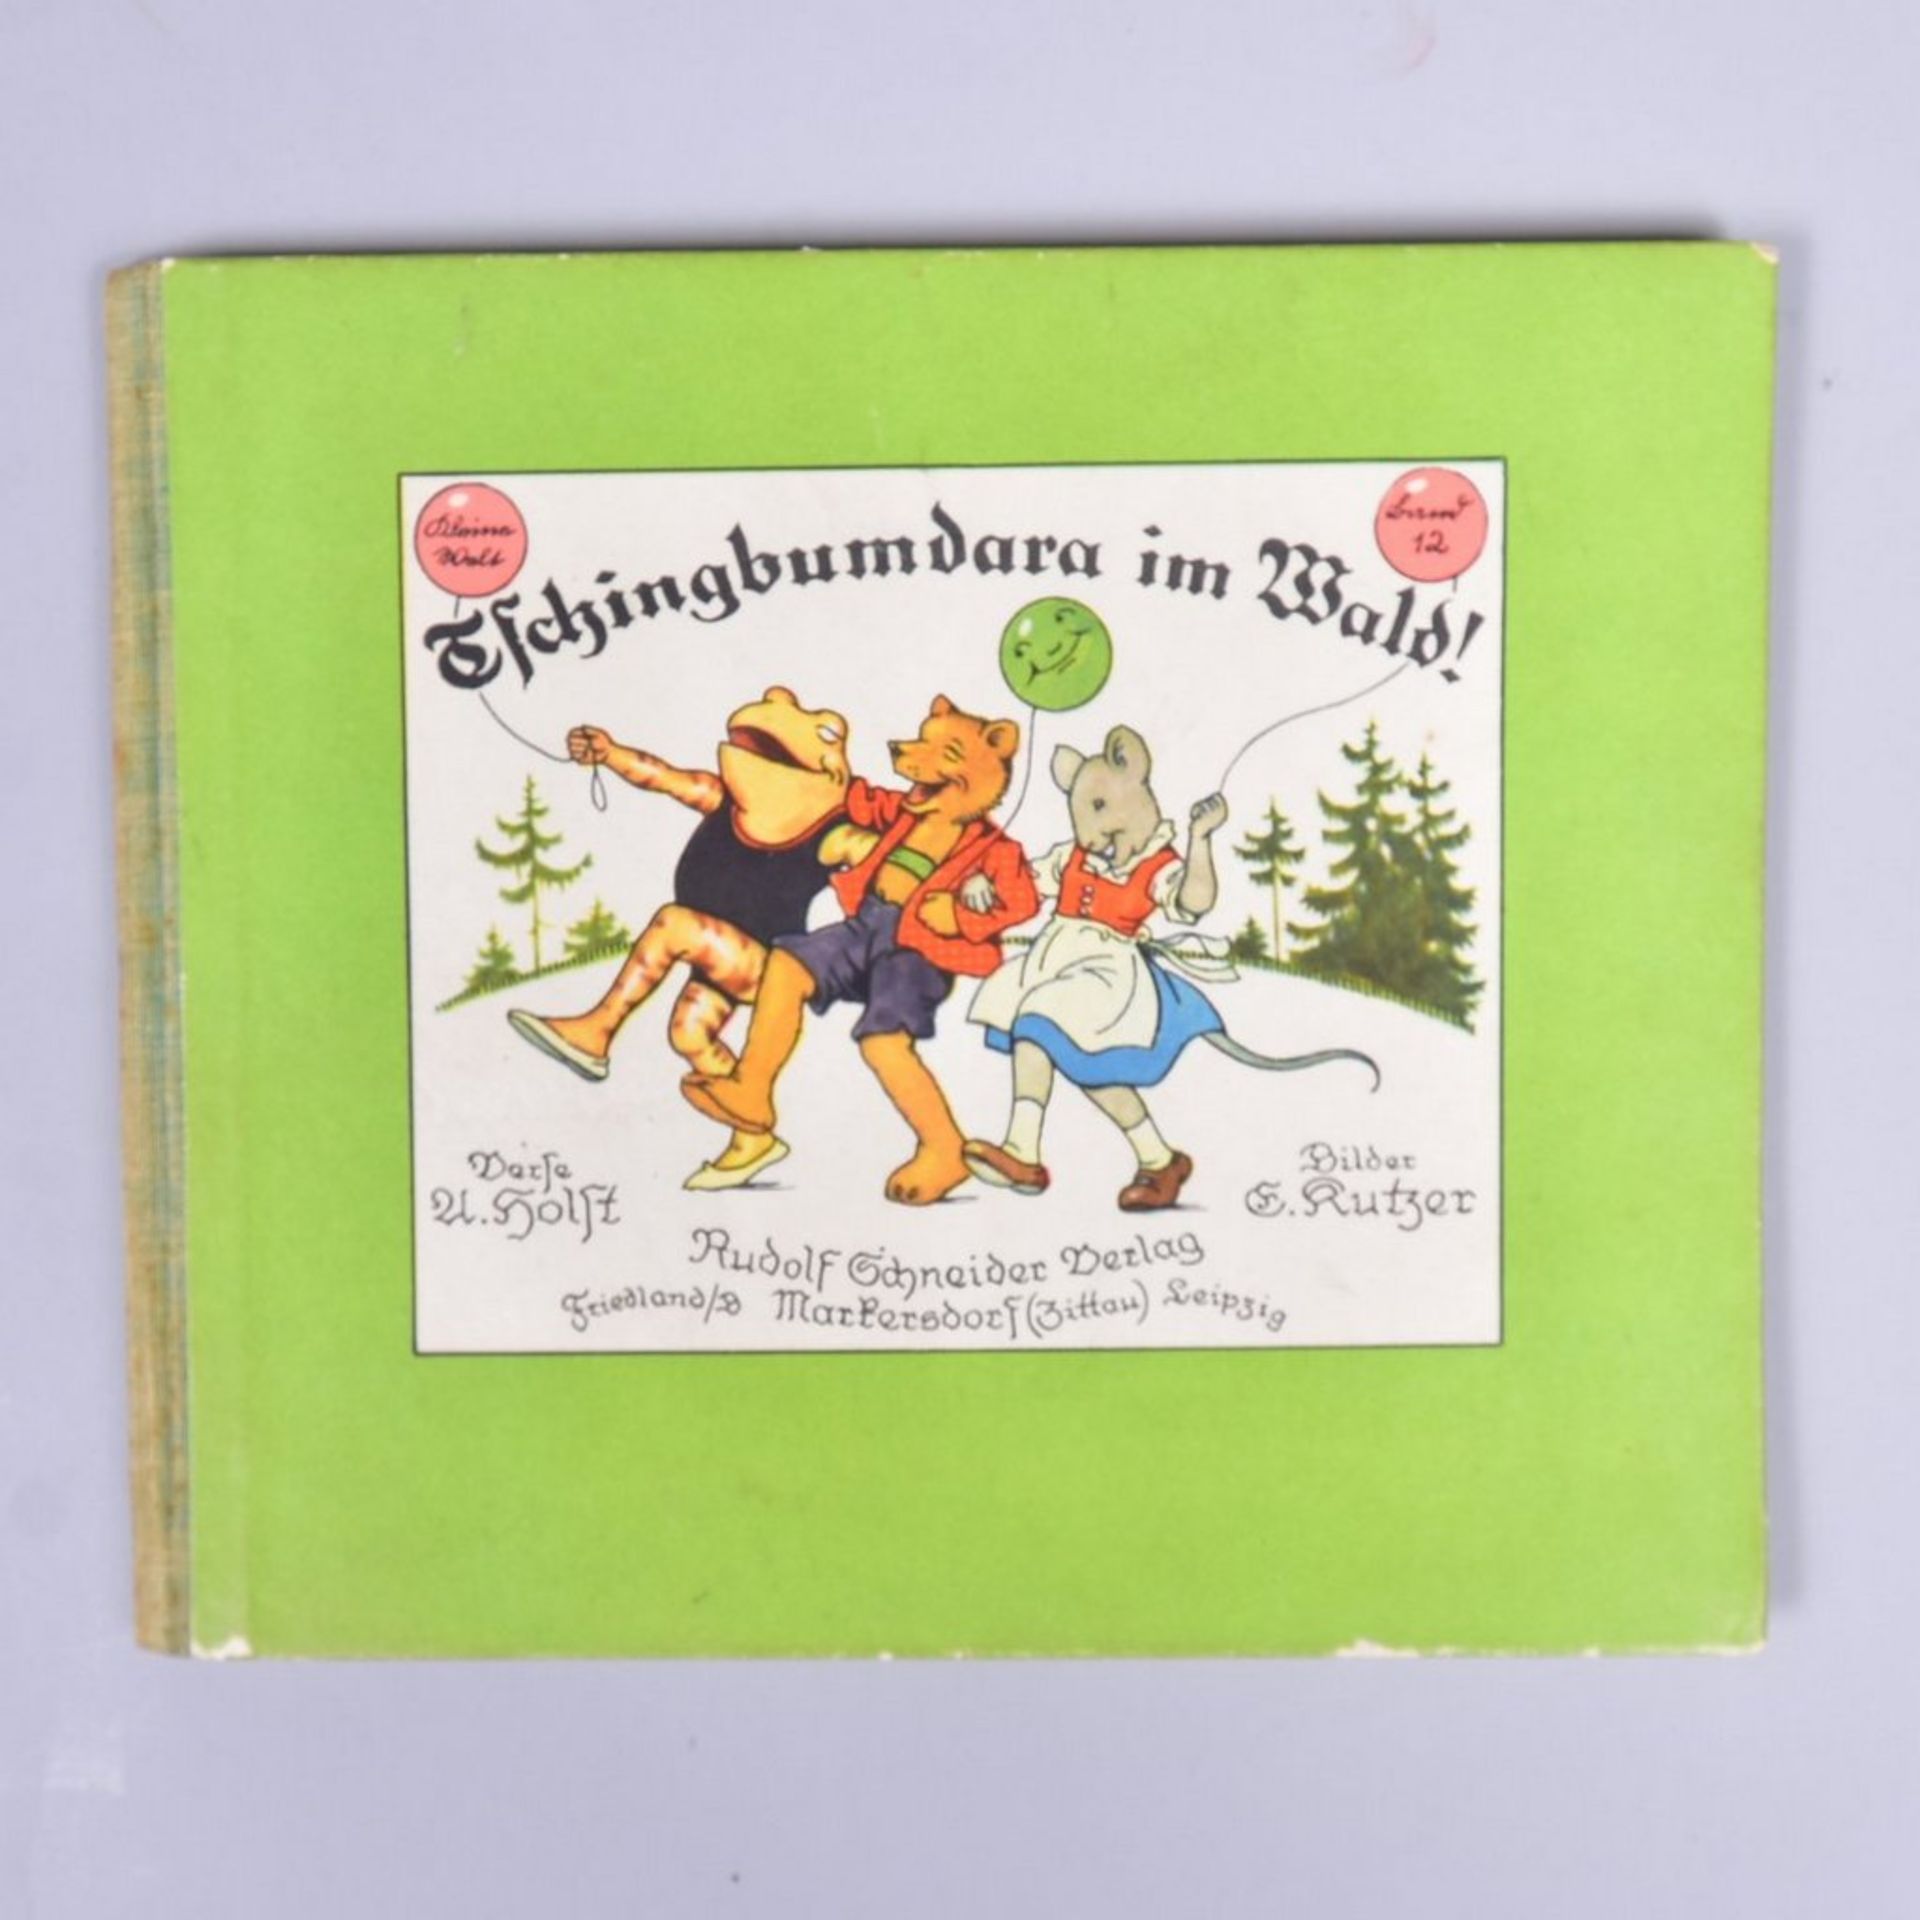 "Tschingbumdara im Wald", Adolf Holst, Bilder Ernst Kutzen, Rudolf Schneider Verlag 1934 Markersdorf